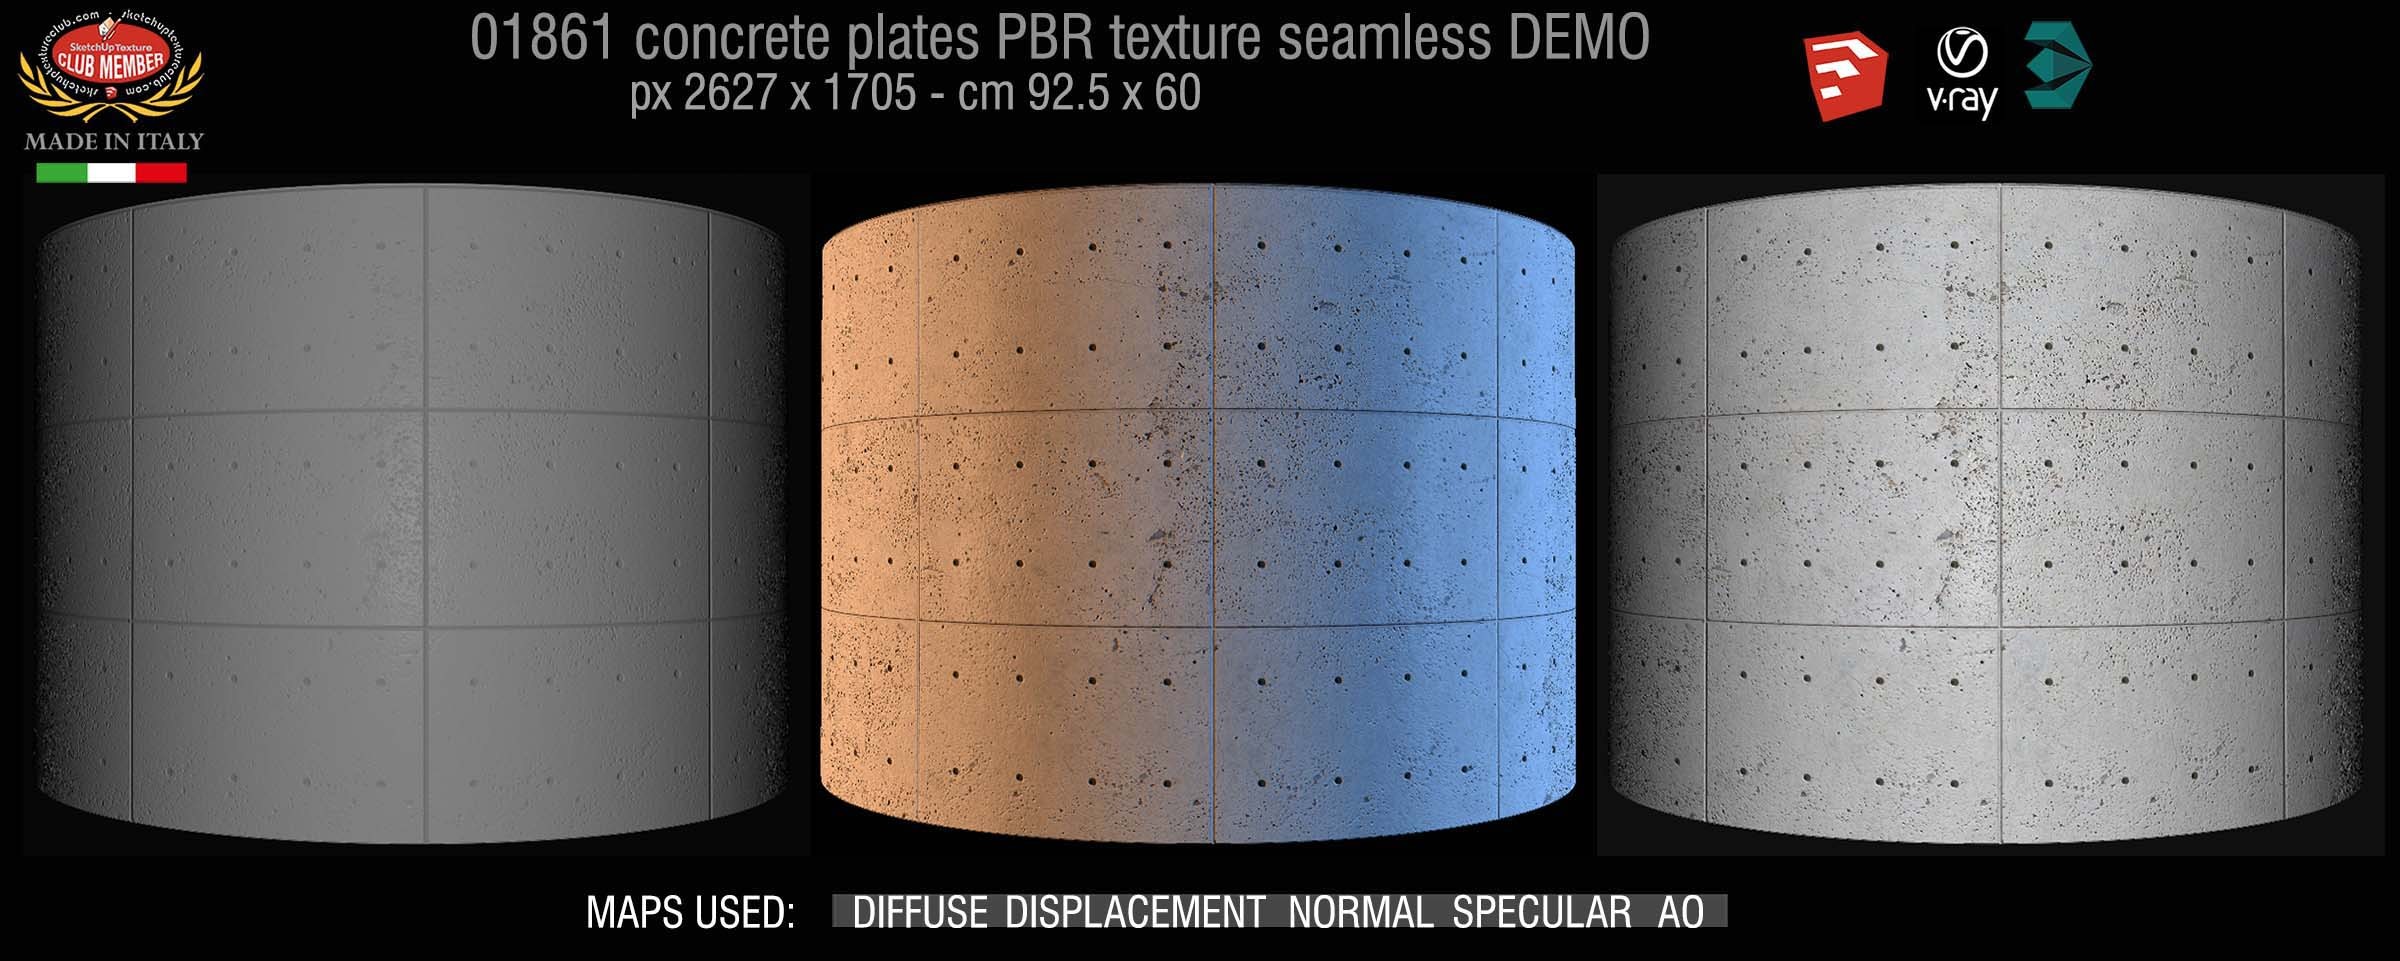 01861 Tadao Ando concrete plates PBR texture seamless DEMO